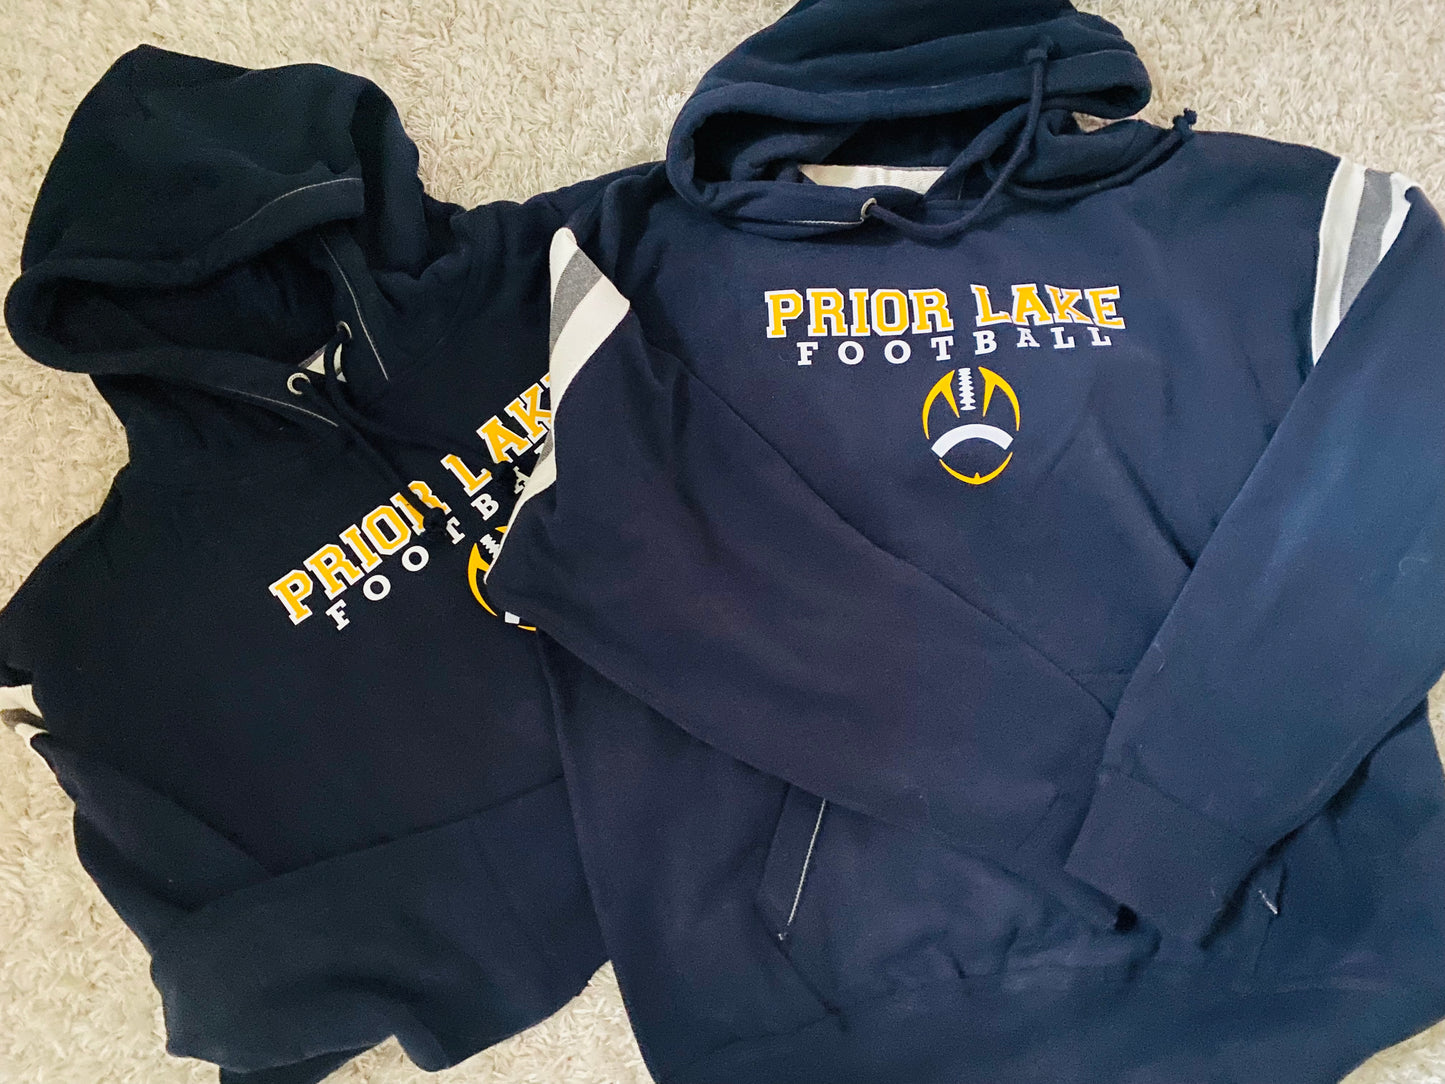 Prior lake football hoodie